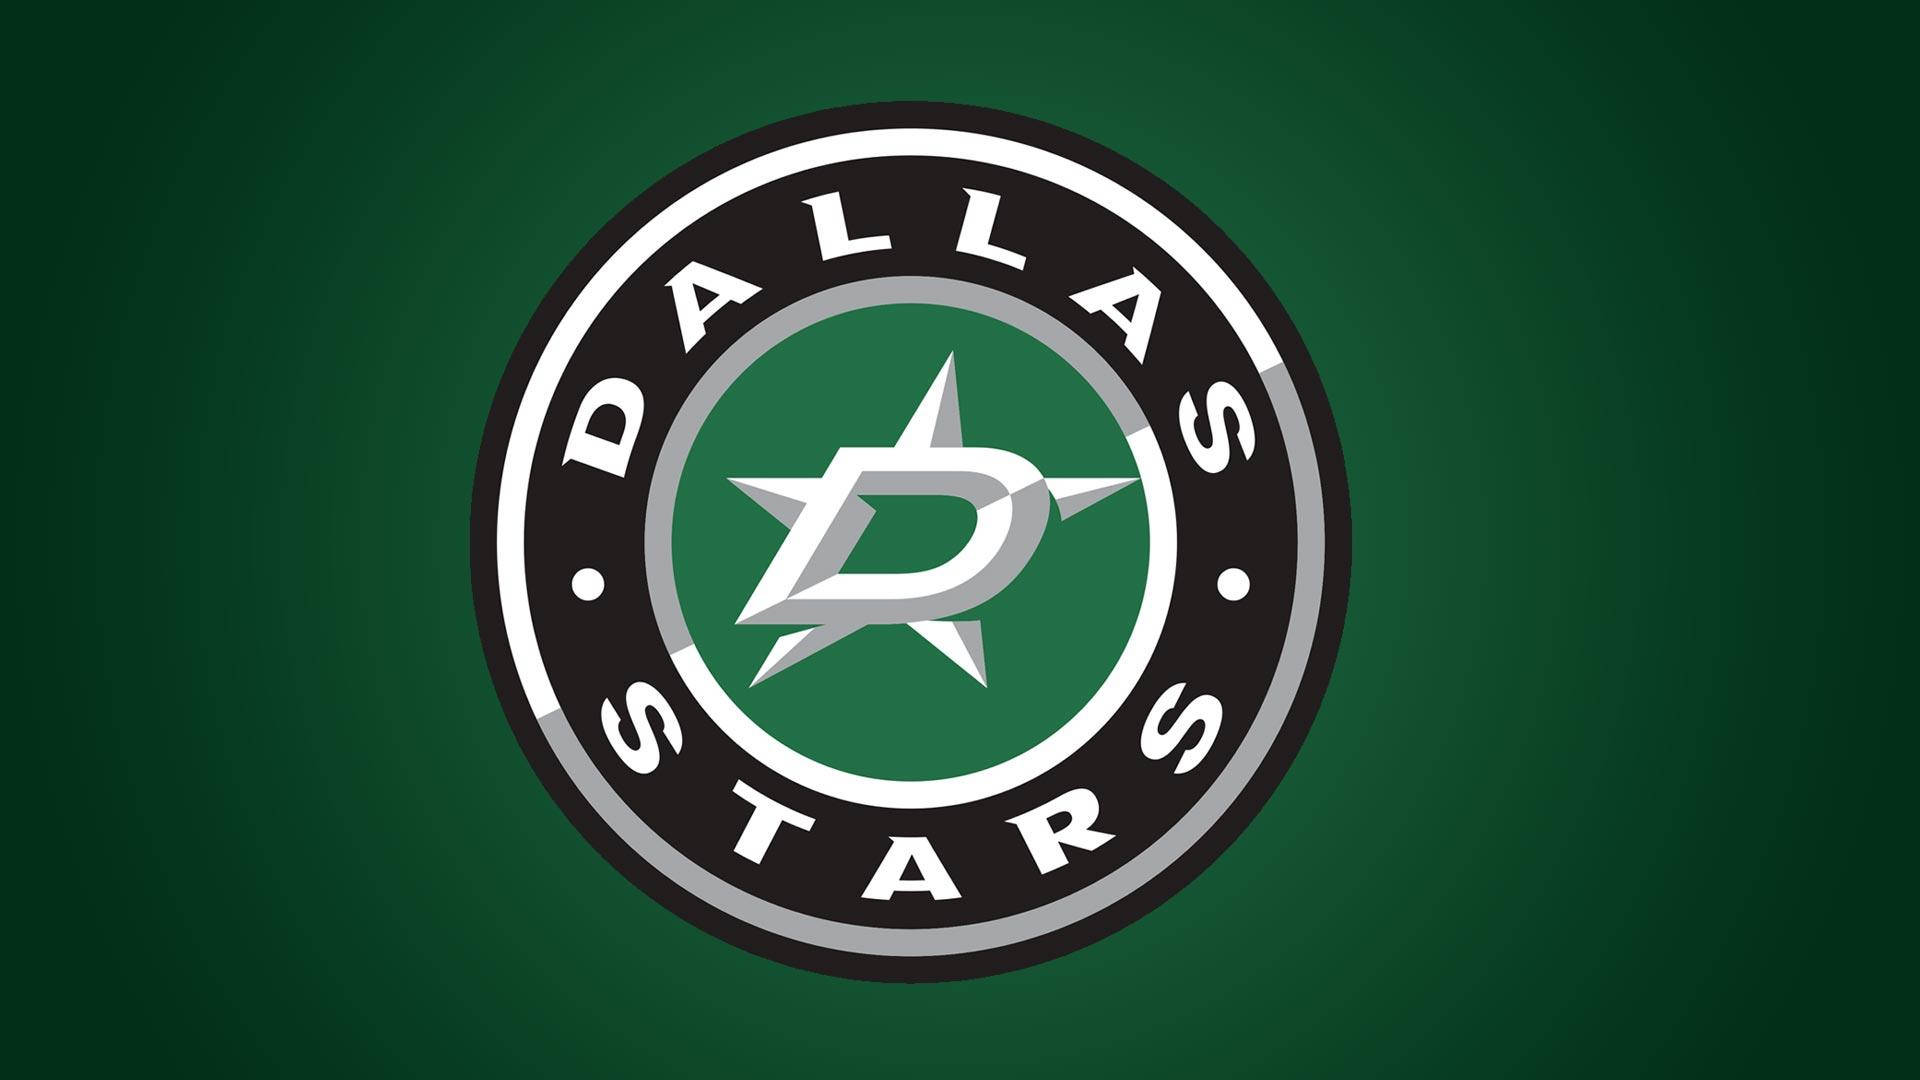 Dallas Stars Background Wallpaper